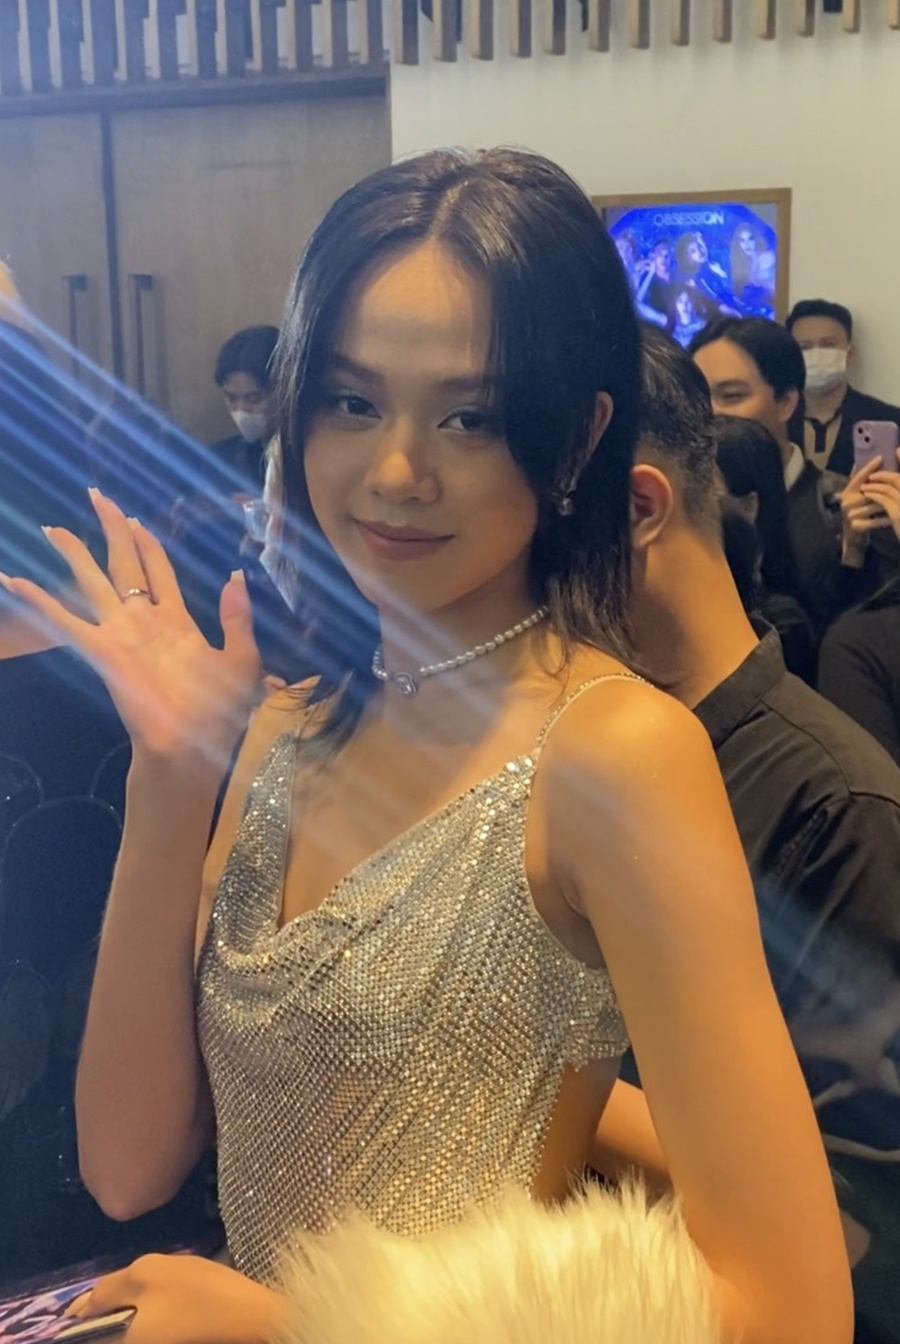 Tân Hoa hậu Việt Nam 2022 Thanh Thủy nhạt nhòa trong lần đầu đi thảm đỏ, khó sánh với dàn hậu 'chặt chém' - ảnh 1